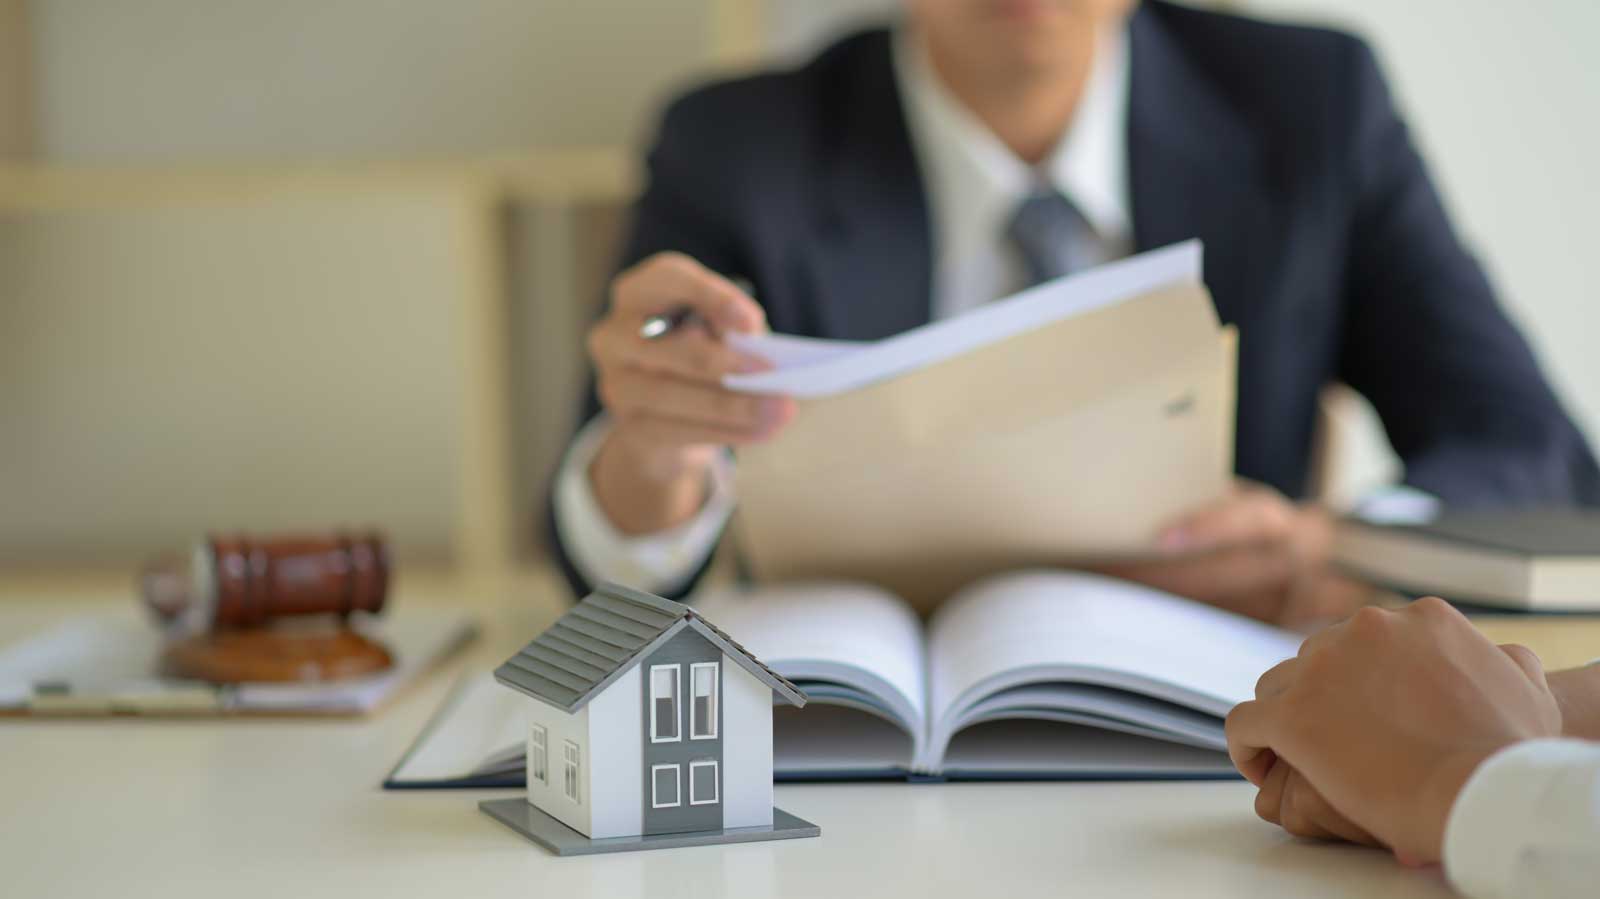 Acquistare casa: il ruolo del Notaio nella compravendita immobiliare e i documenti necessari